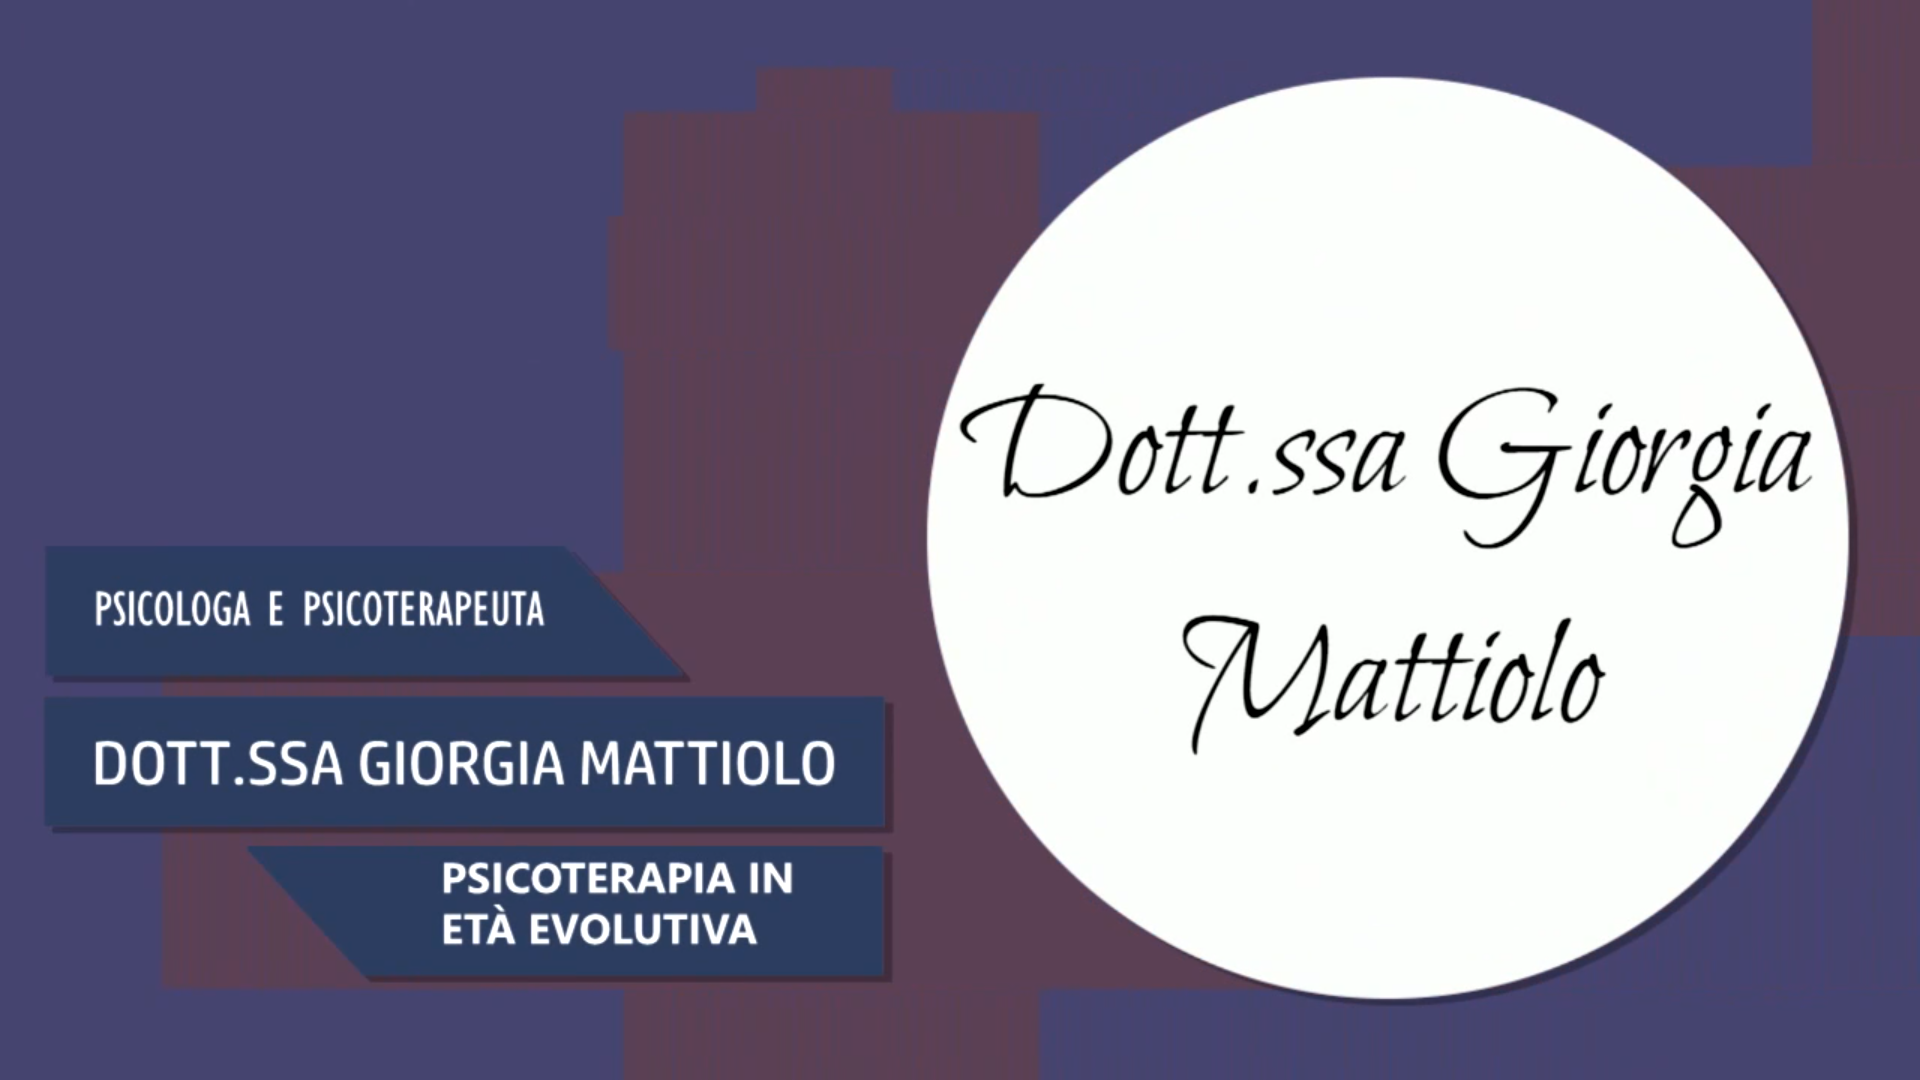 Intervista alla Dott.ssa Giorgia Mattiolo – Psicoterapia in età evolutiva